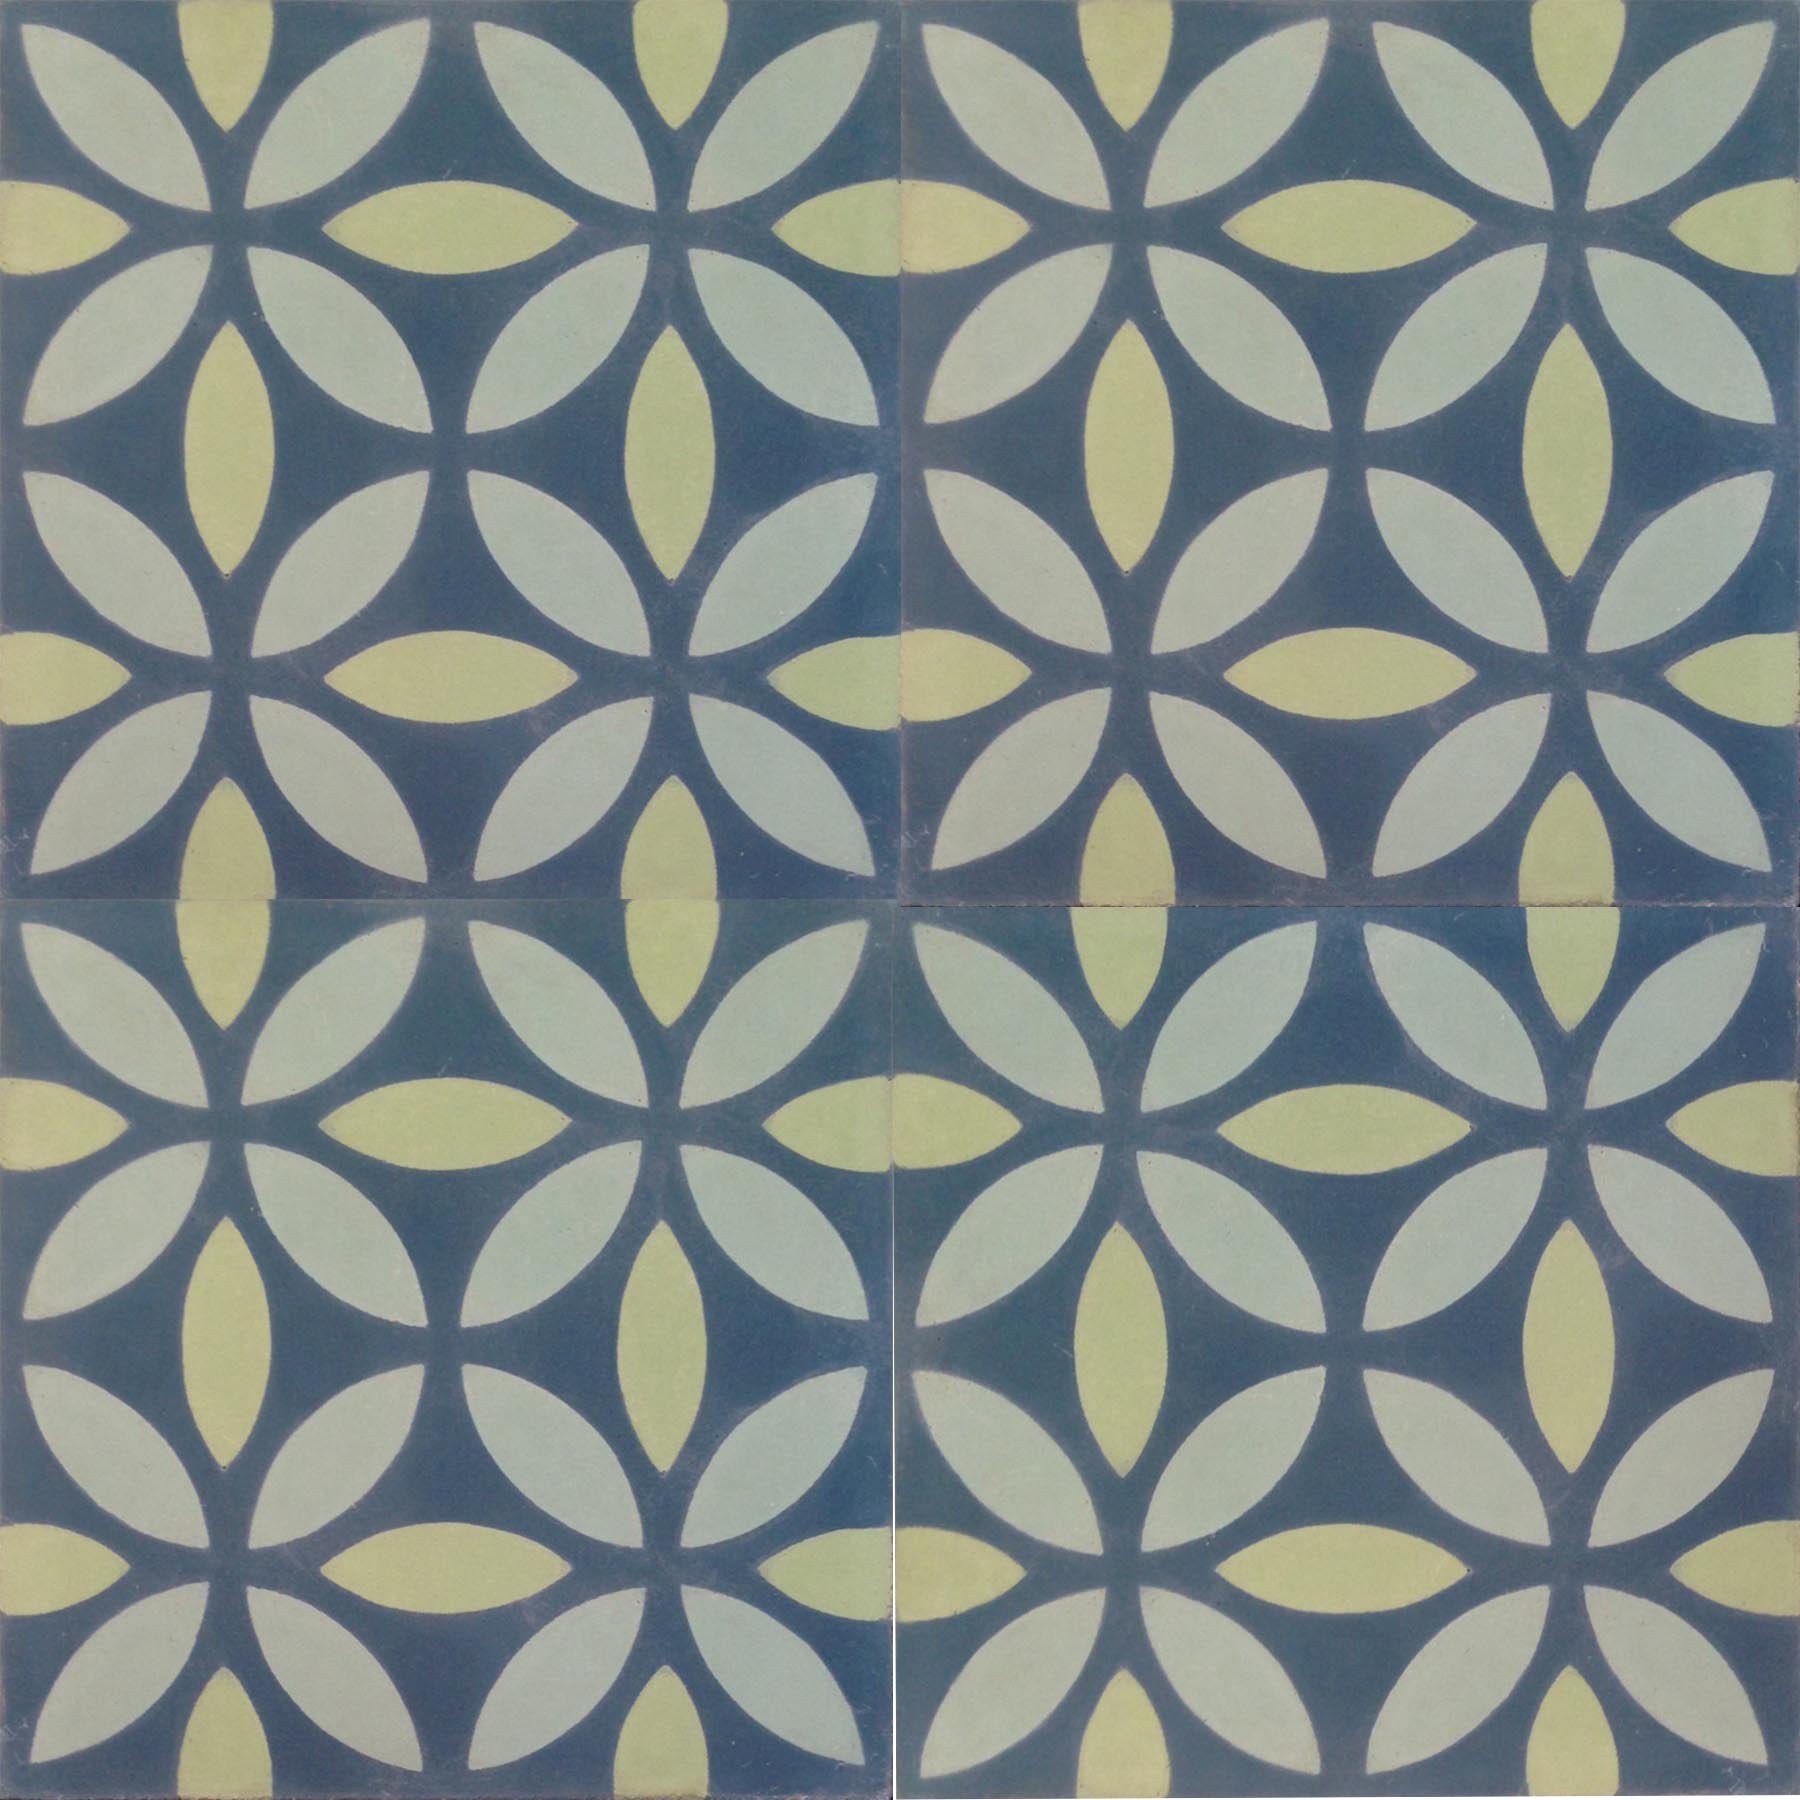 Petals Blue Green Encaustic Tile 20cm*20cm*1.5cm